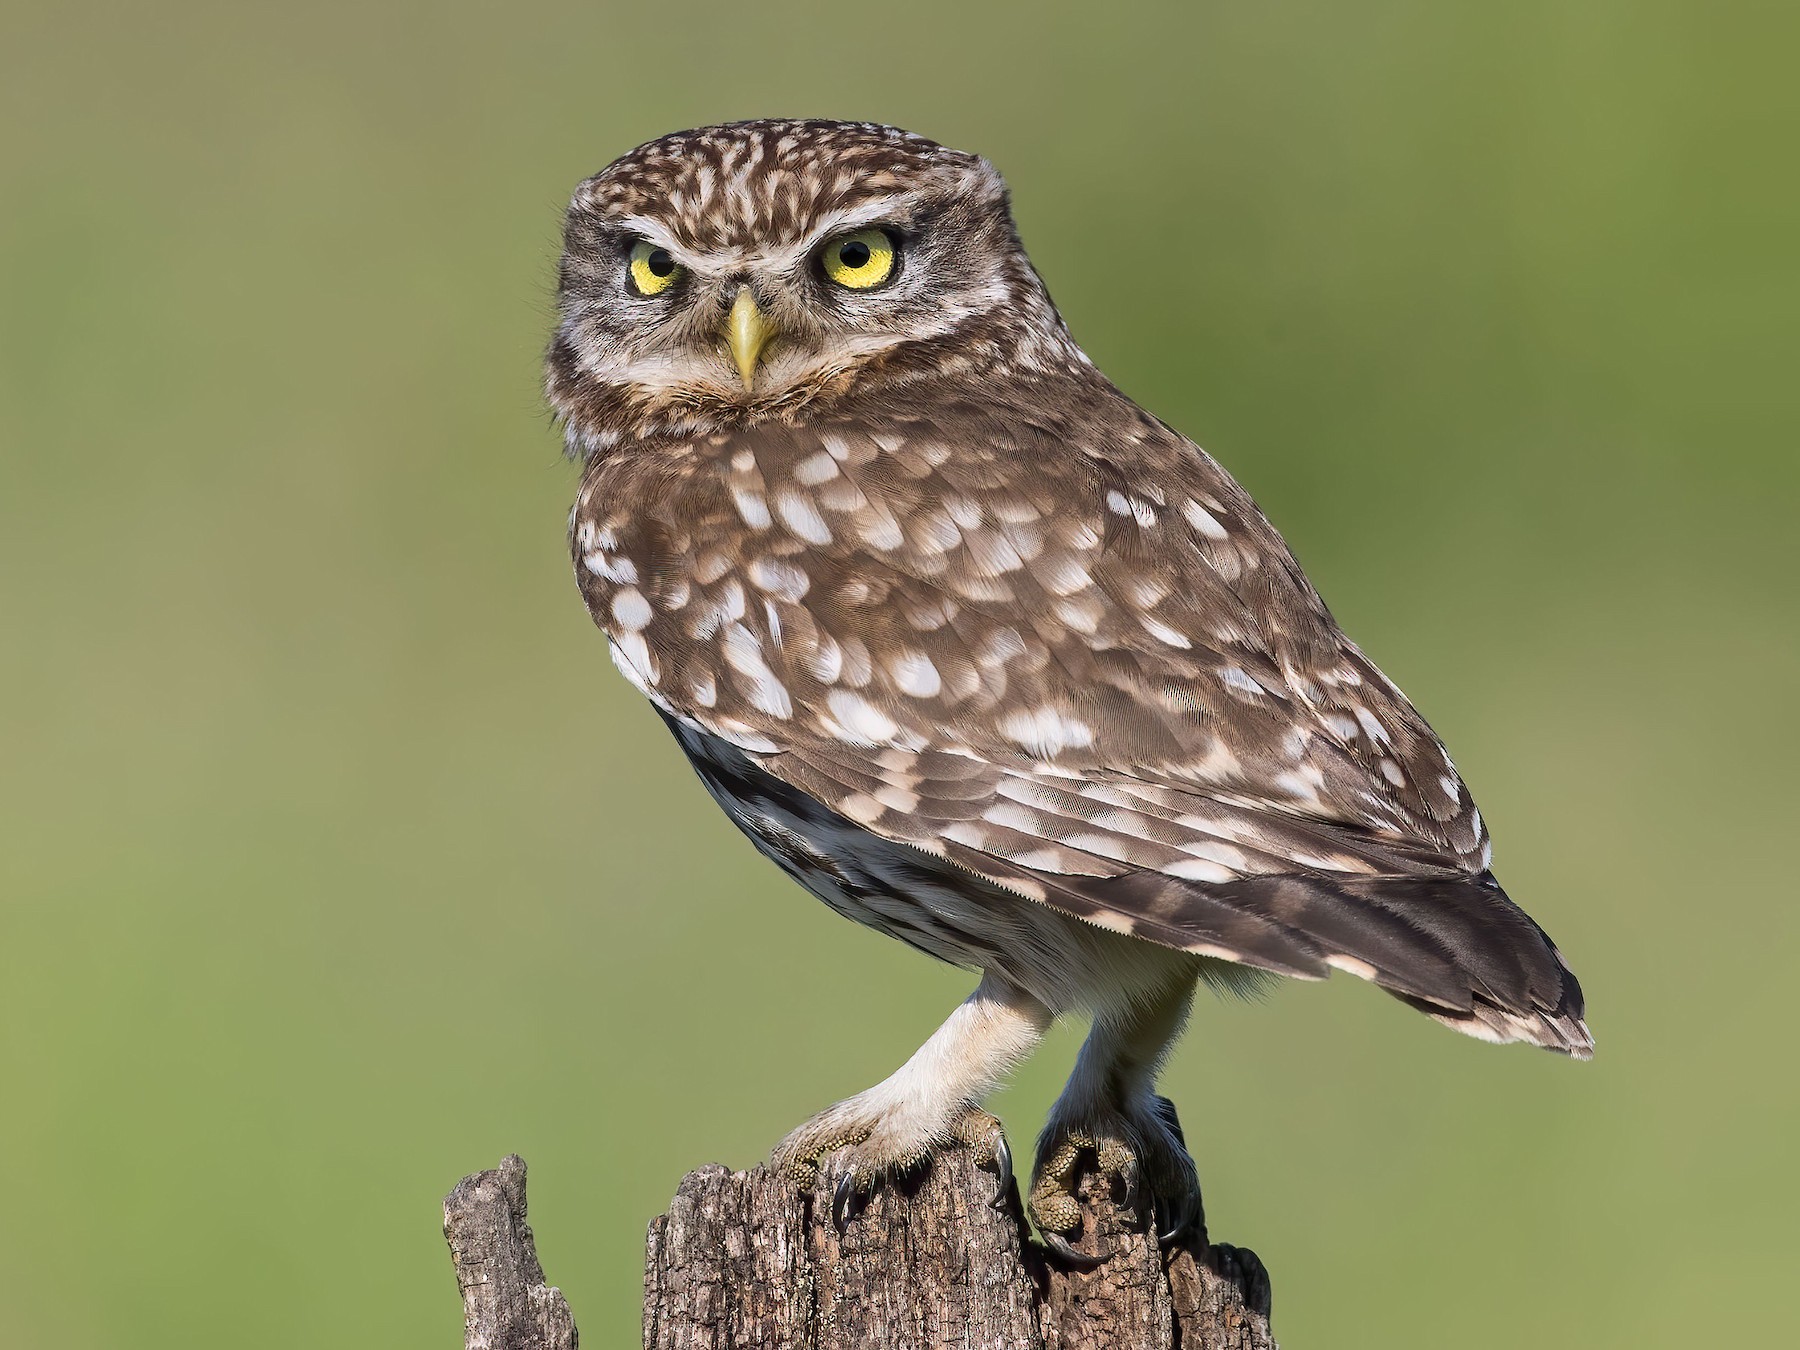 National bird of Greece - Little owl